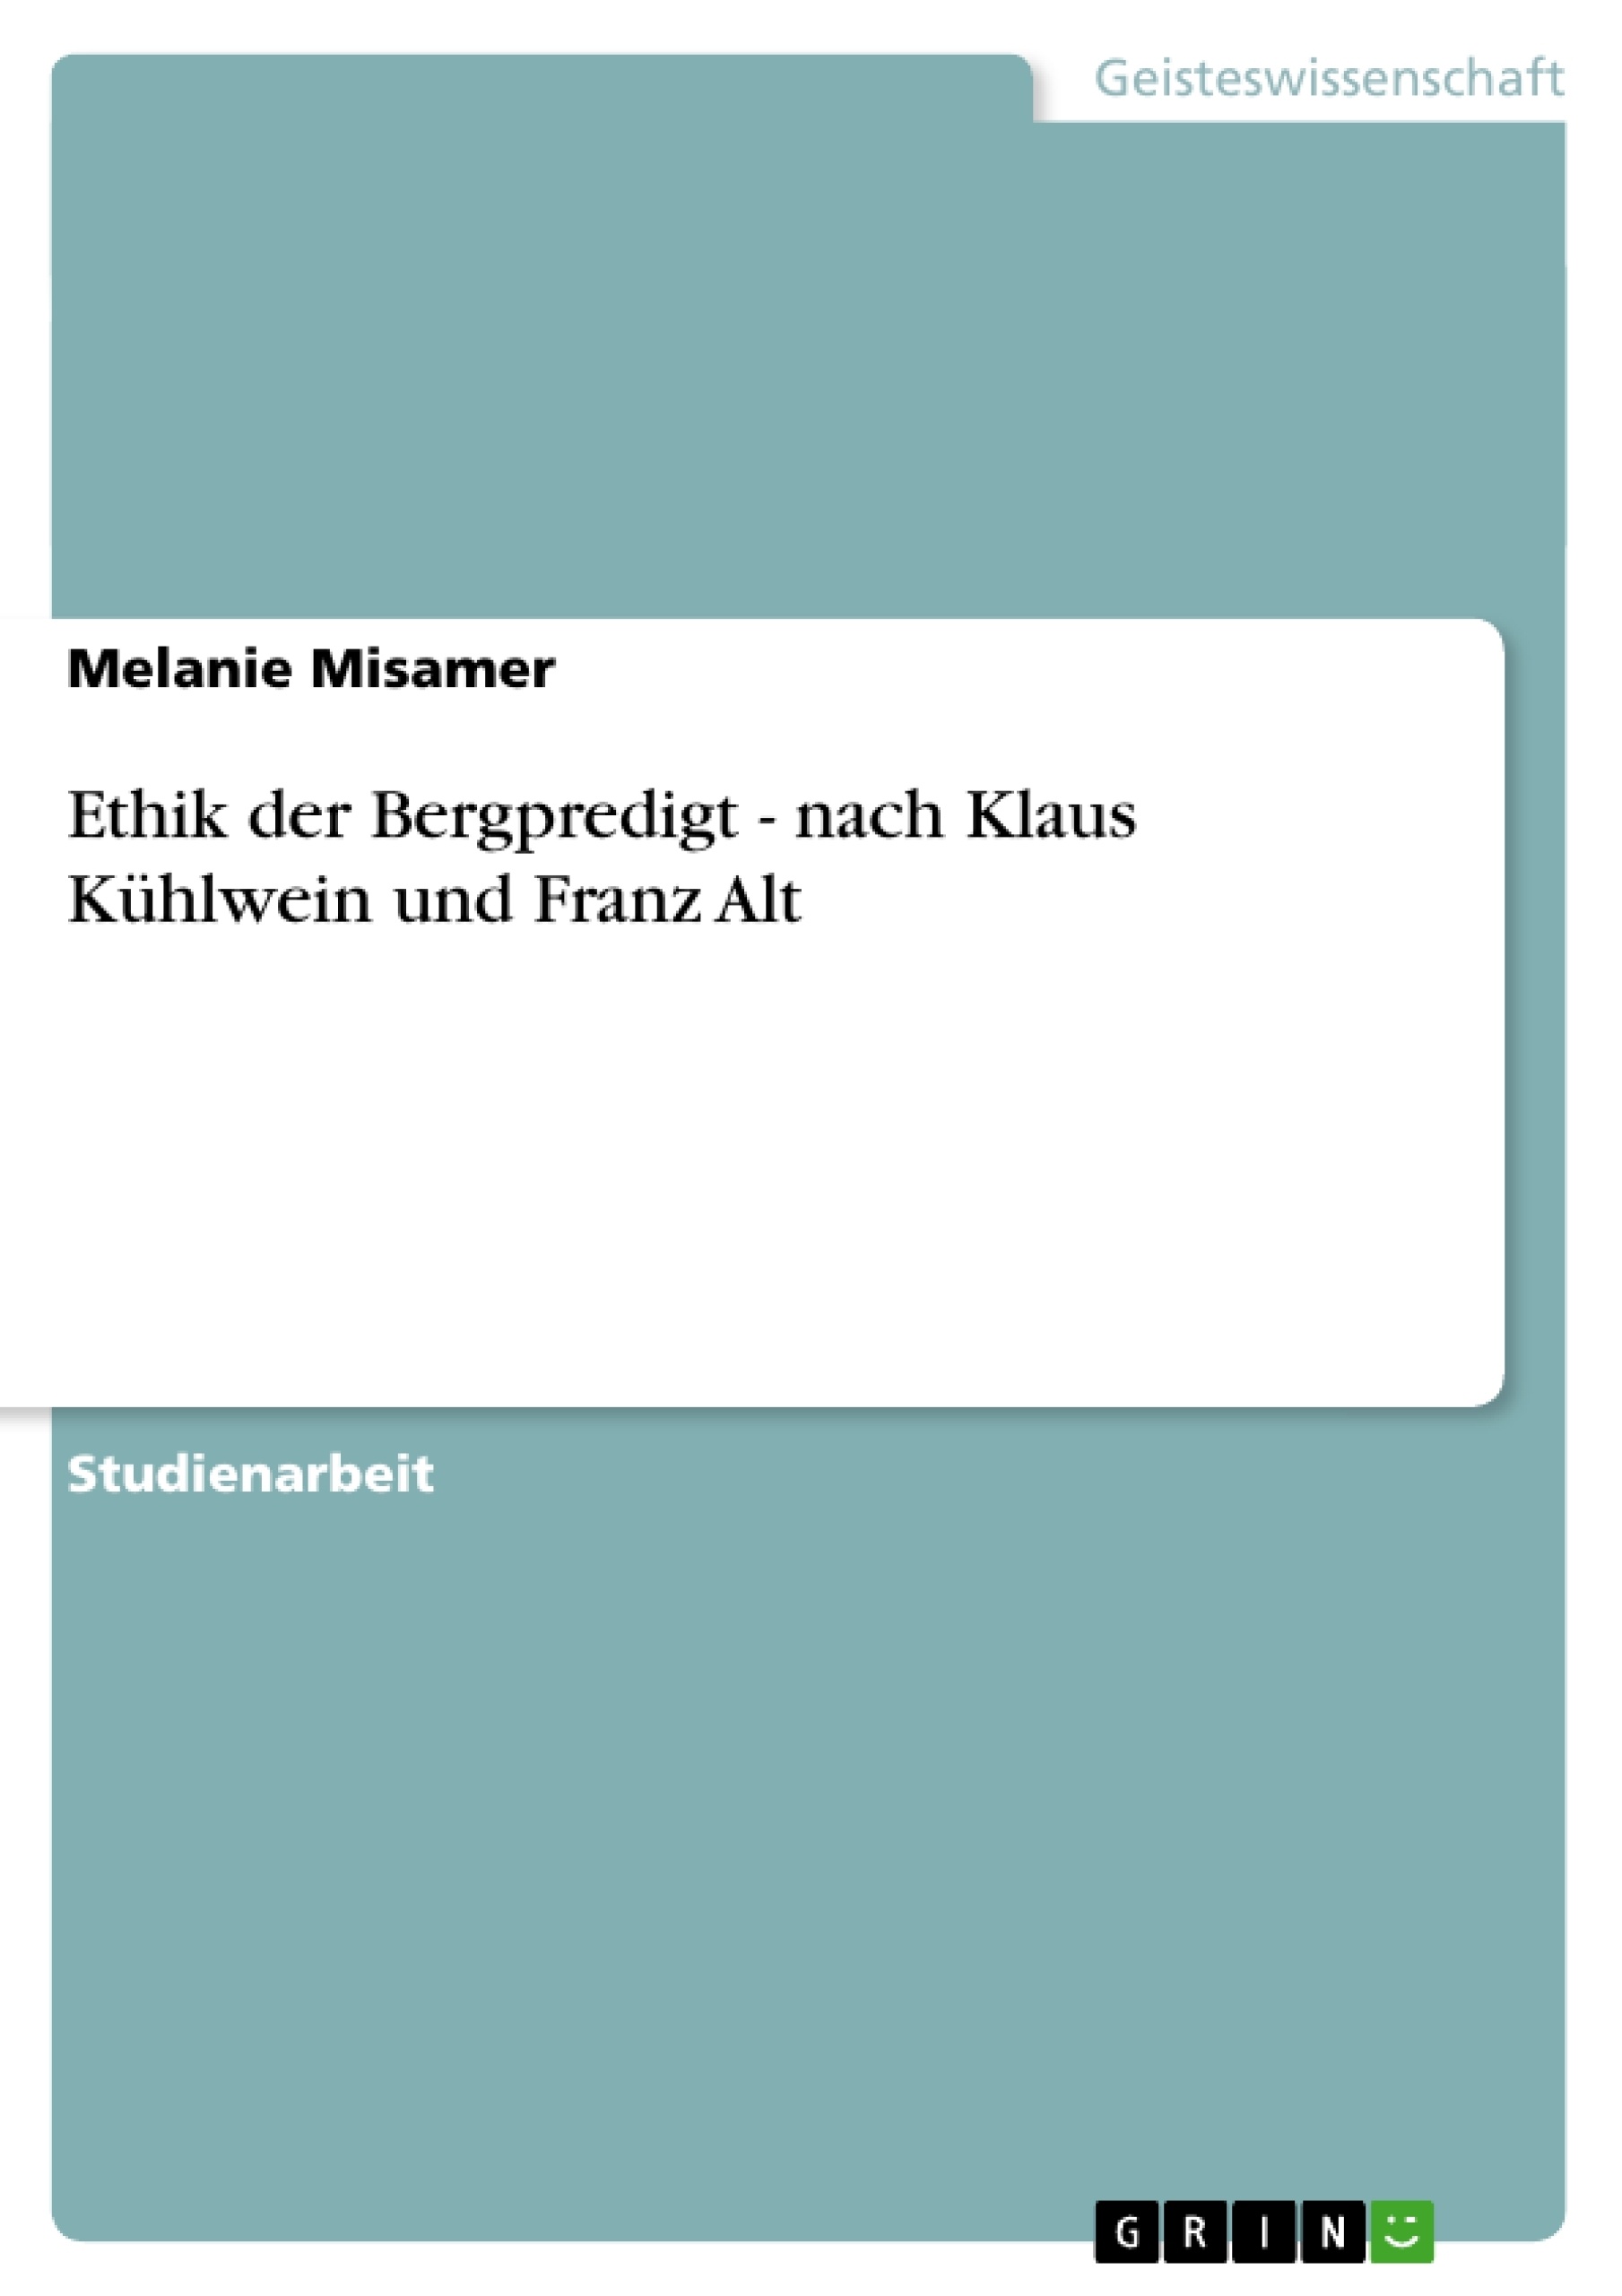 Título: Ethik der Bergpredigt - nach Klaus Kühlwein und Franz Alt